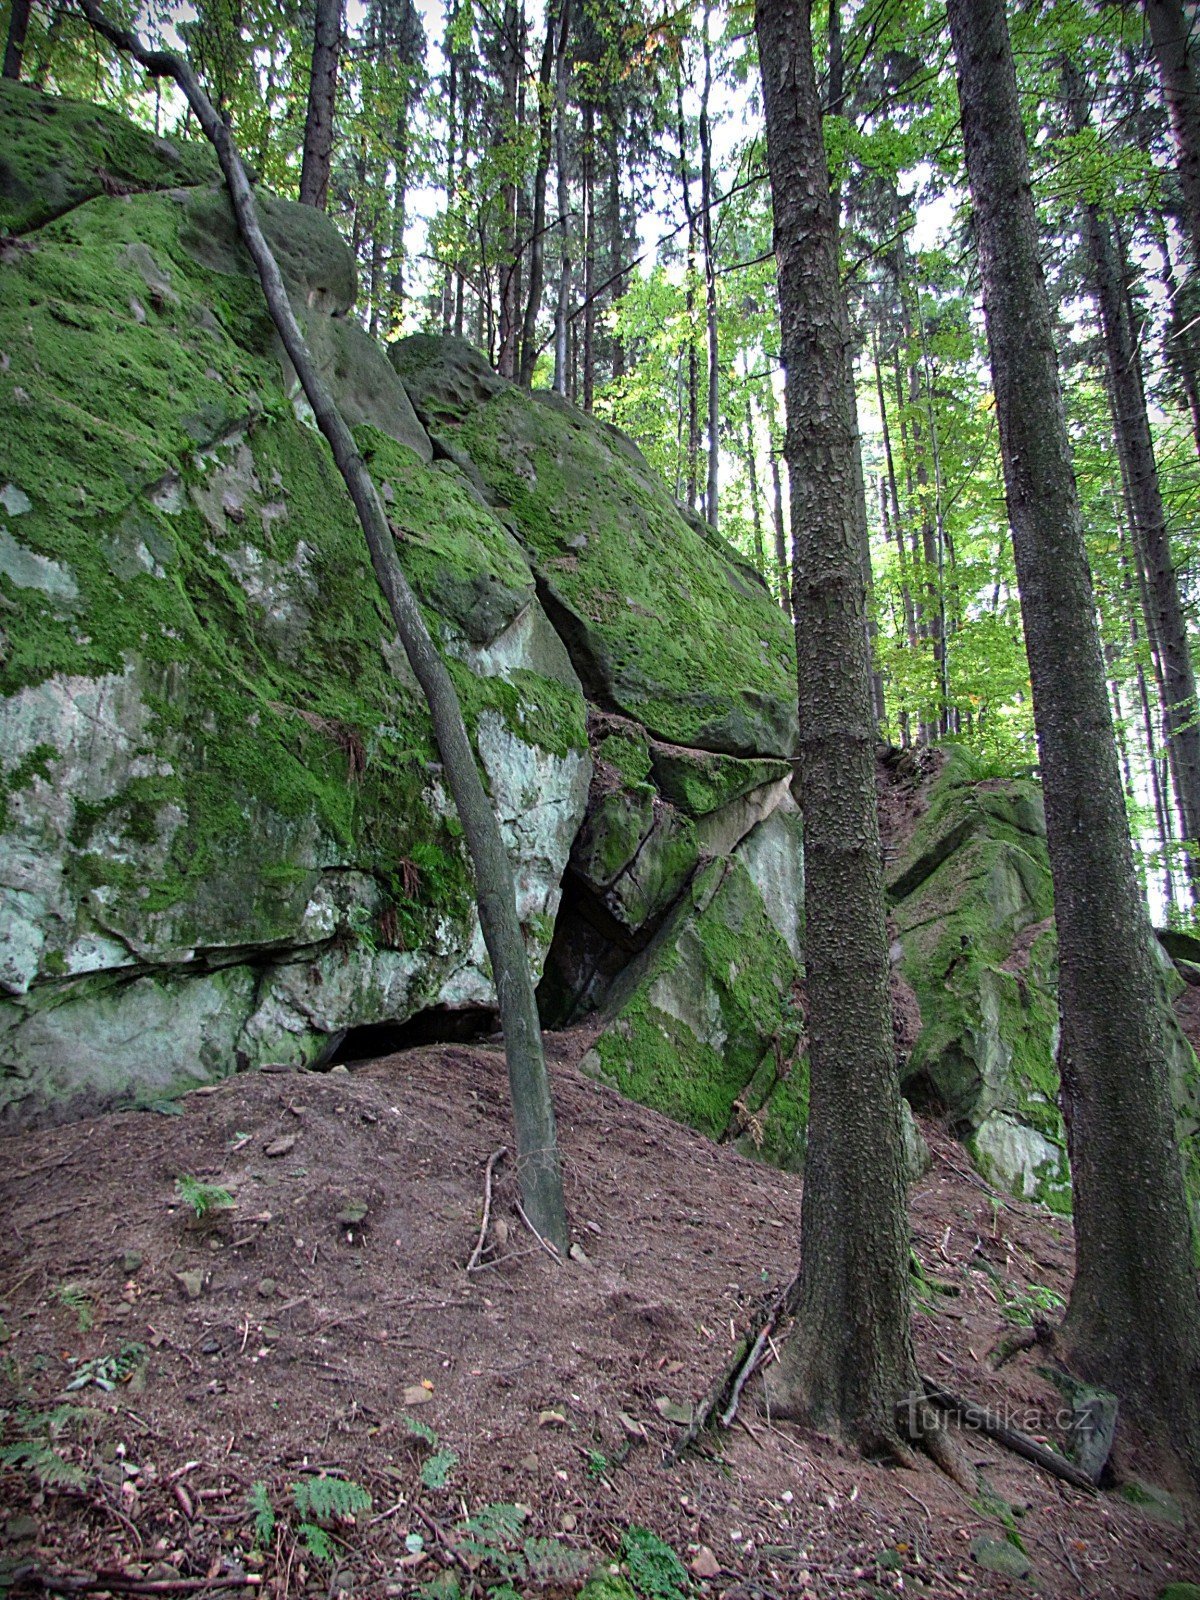 Držková - Cresta rocosa al oeste de la reserva de Holík